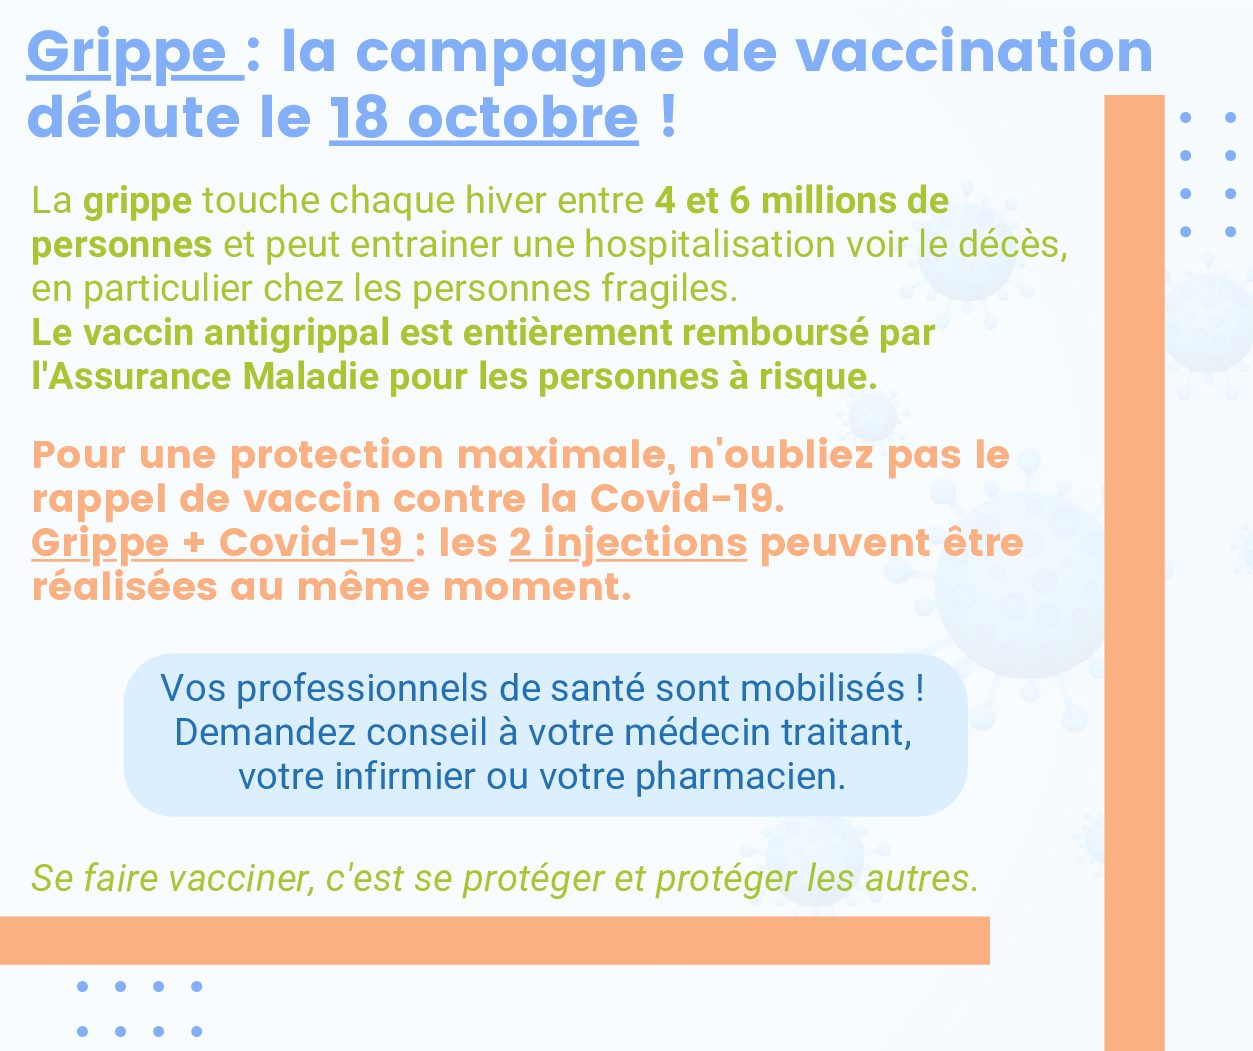 Grippe saisonnière : la campagne de vaccination débute le 18 octobre